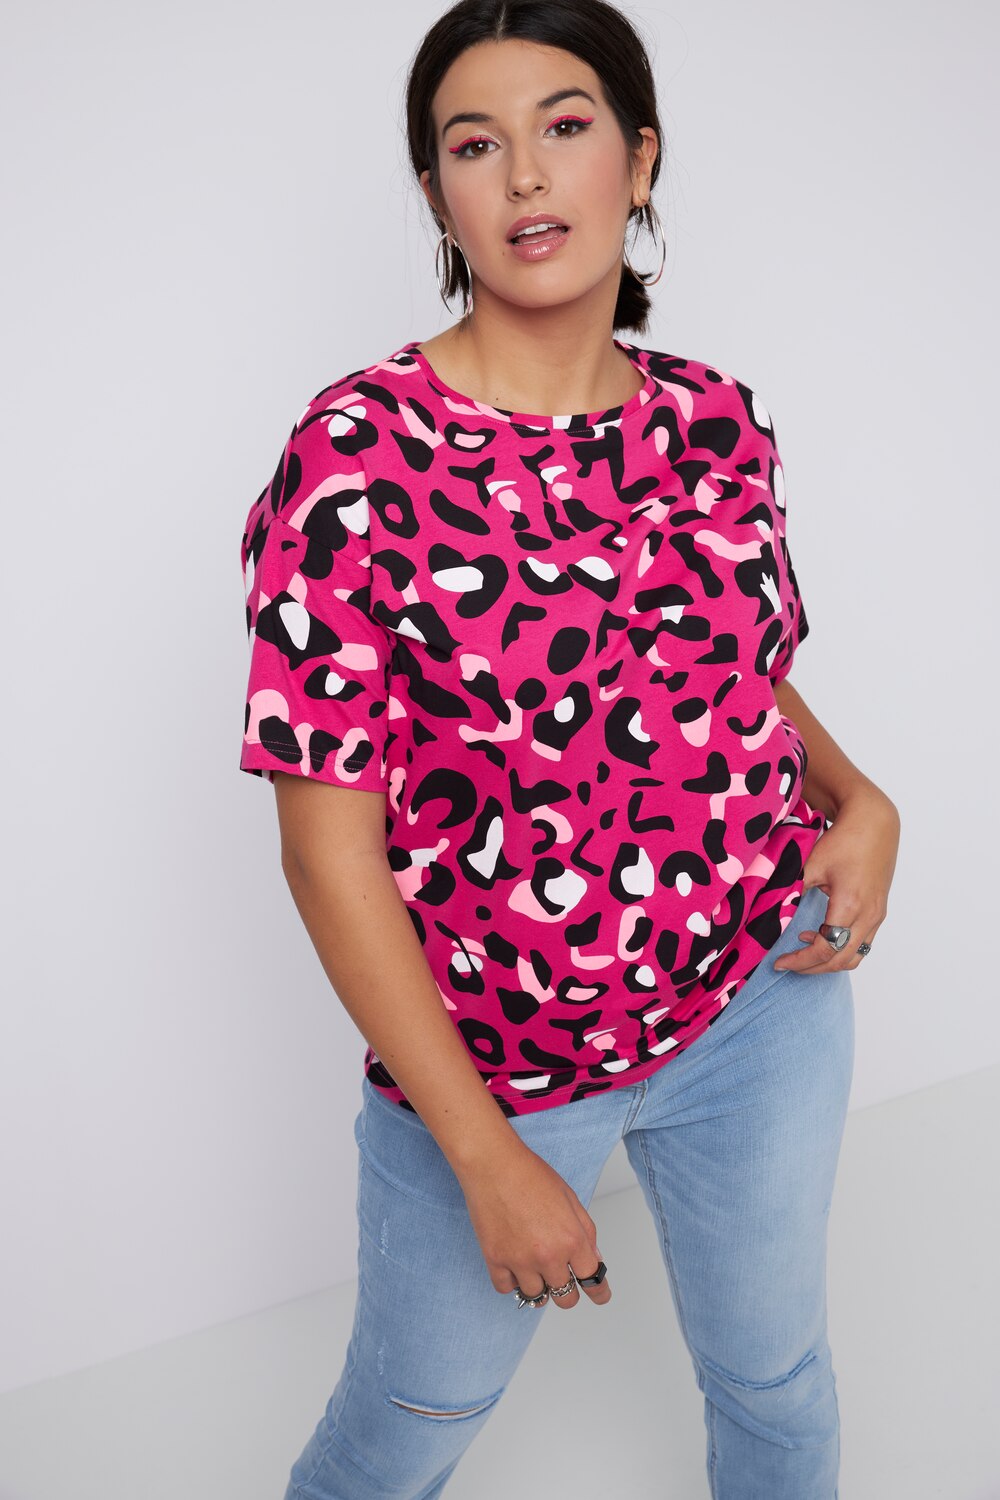 Grote Maten T-shirt, Dames, roze, Maat: 50/52, Katoen, Studio Untold